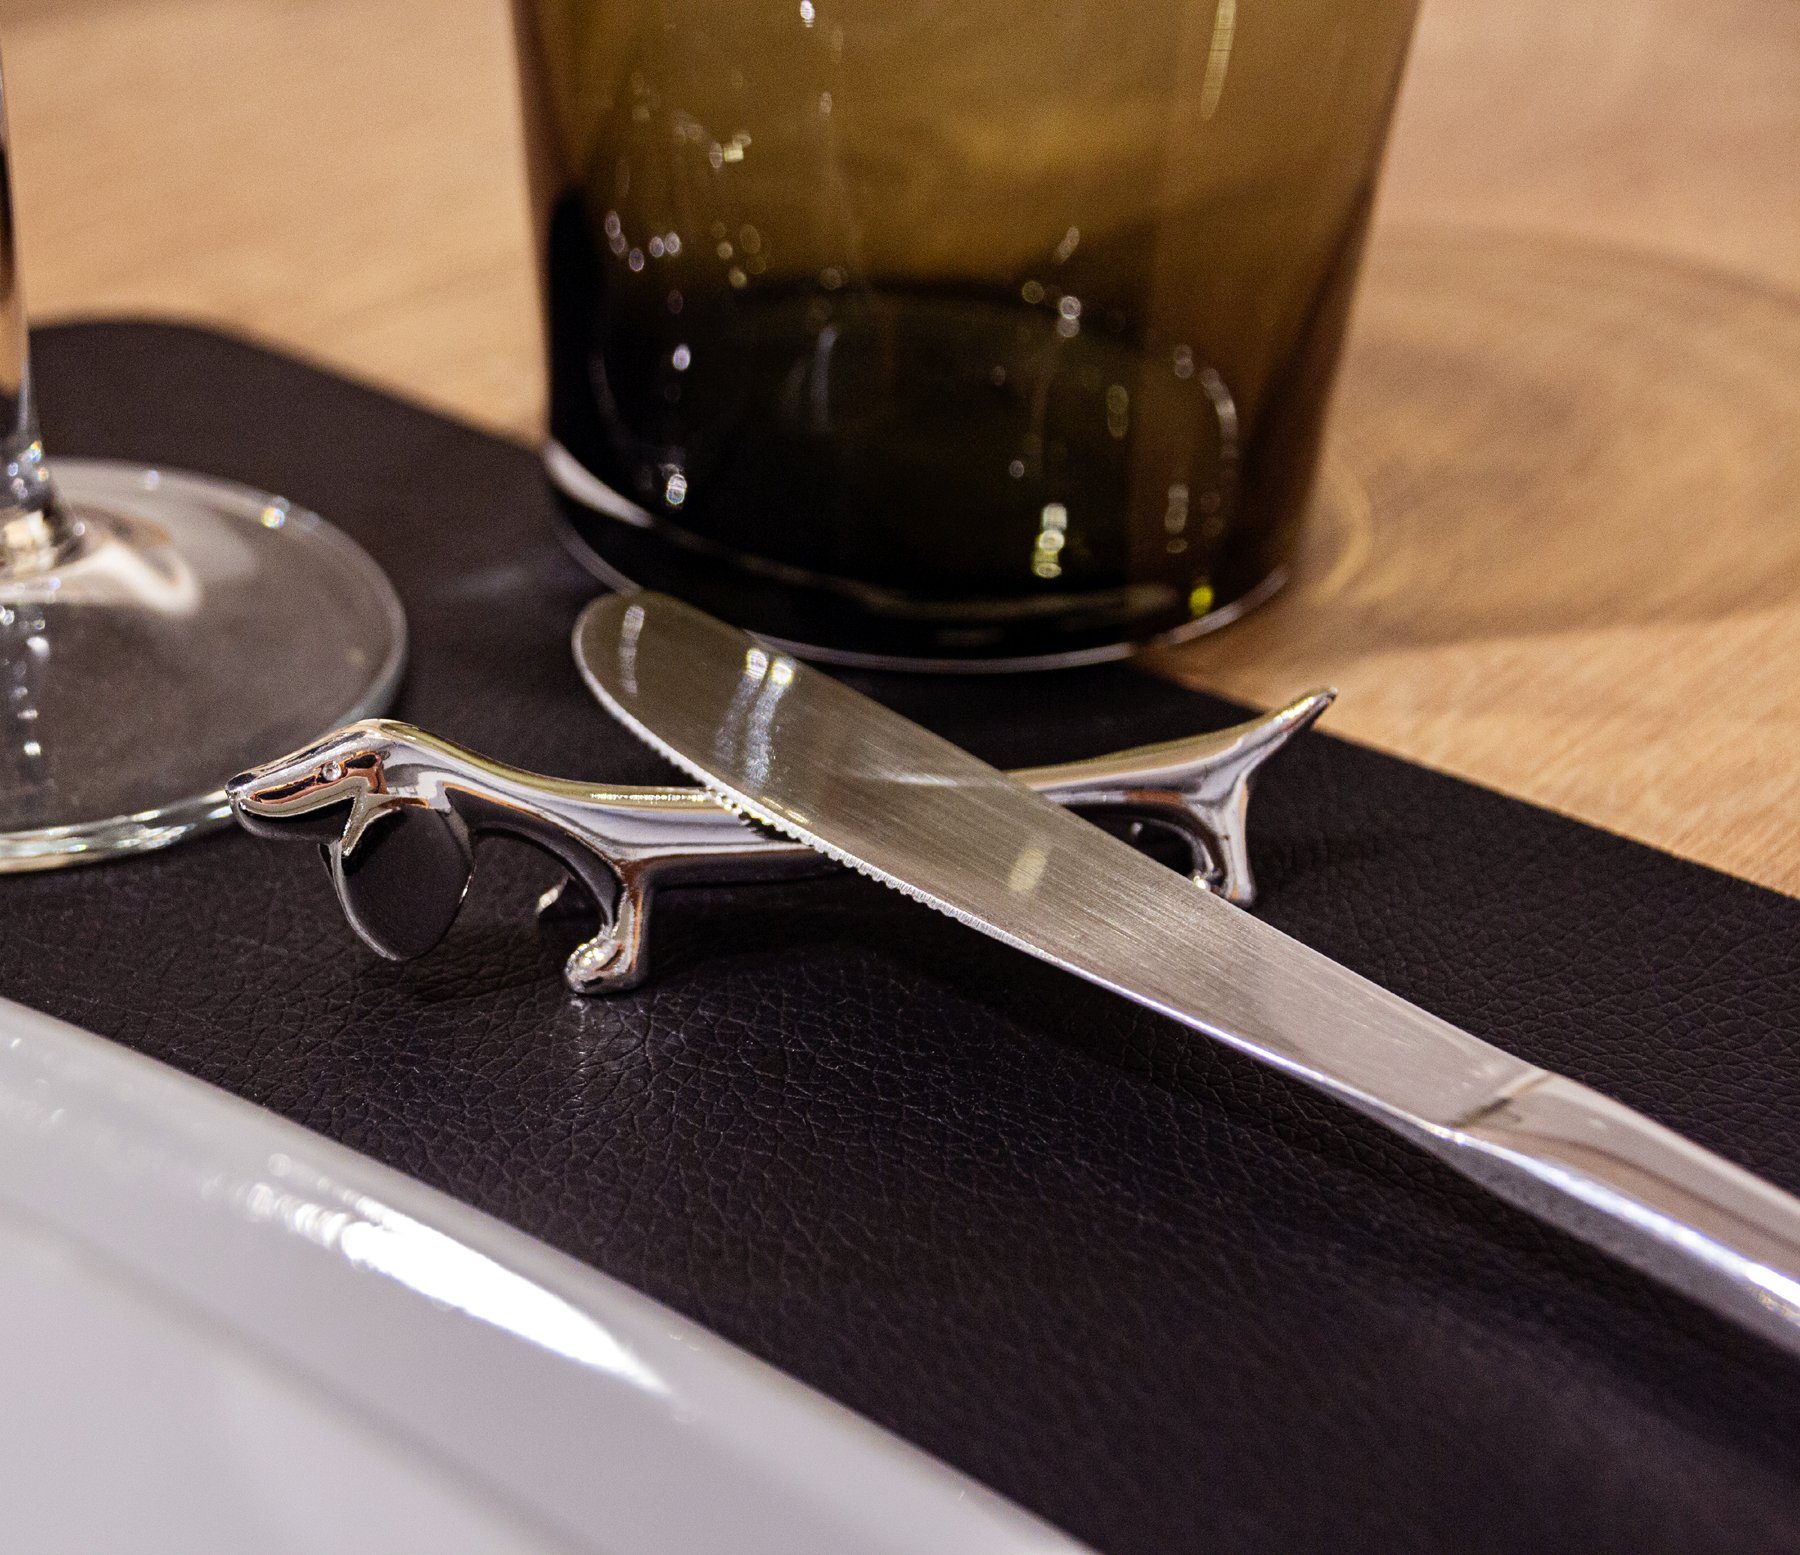 EDZARD Blumentopf Messerbank-Set Silber-Optik, anlaufgeschützt Messerbank und den versilbert Tisch, aus Messing mit für Dackel, Besteckablage